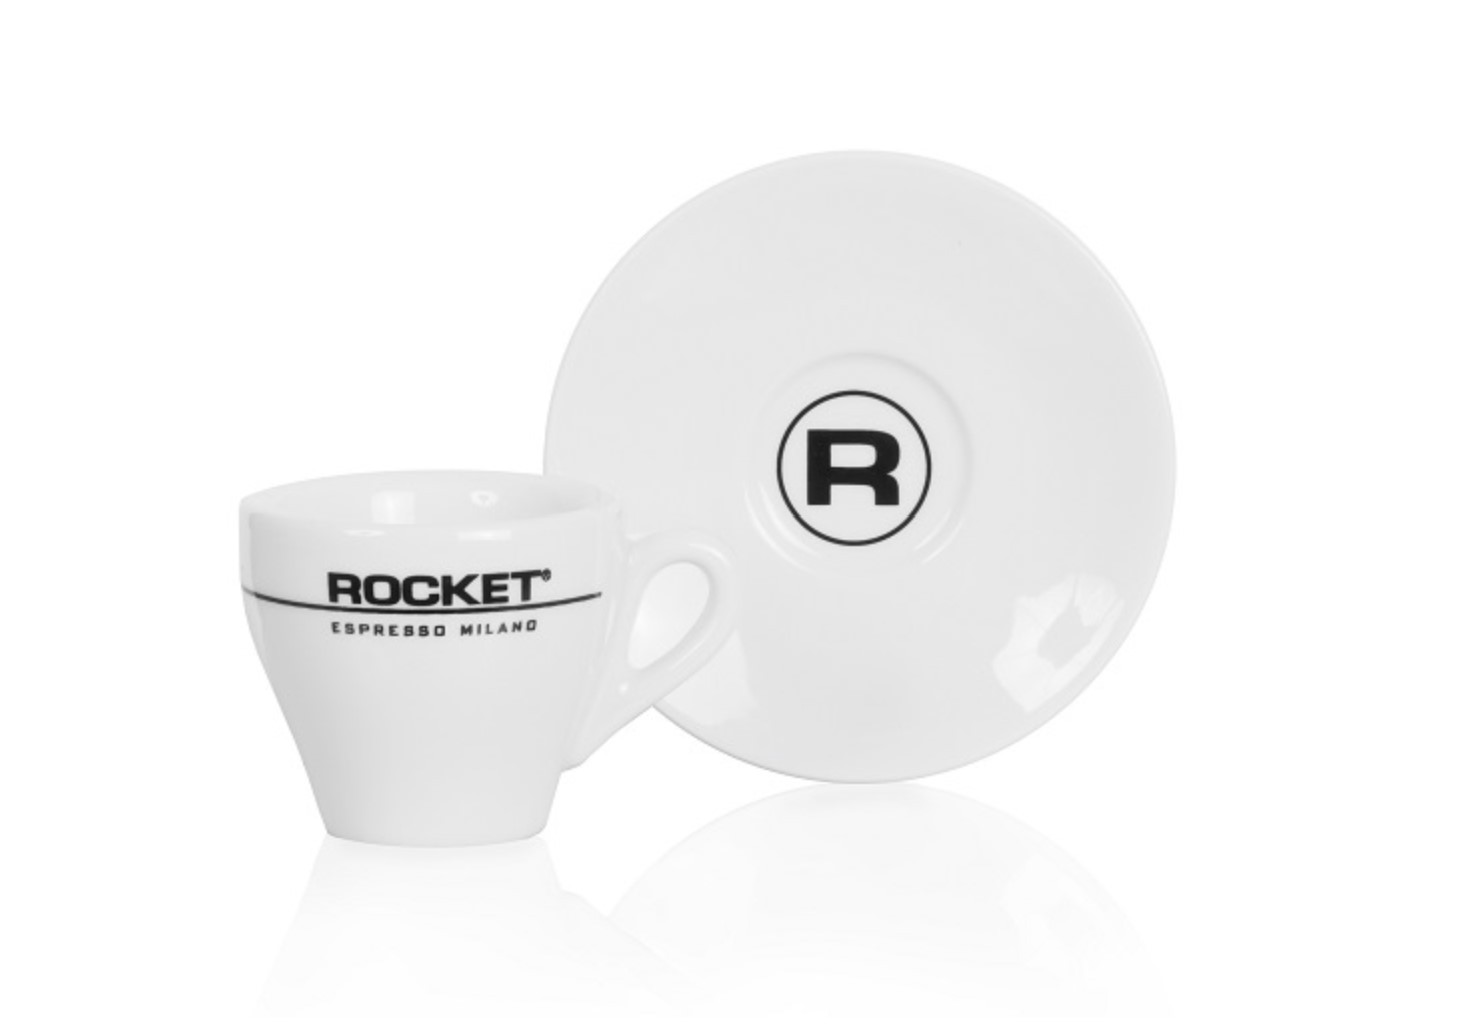 Rocket - Espresso Tassen - 6er Set